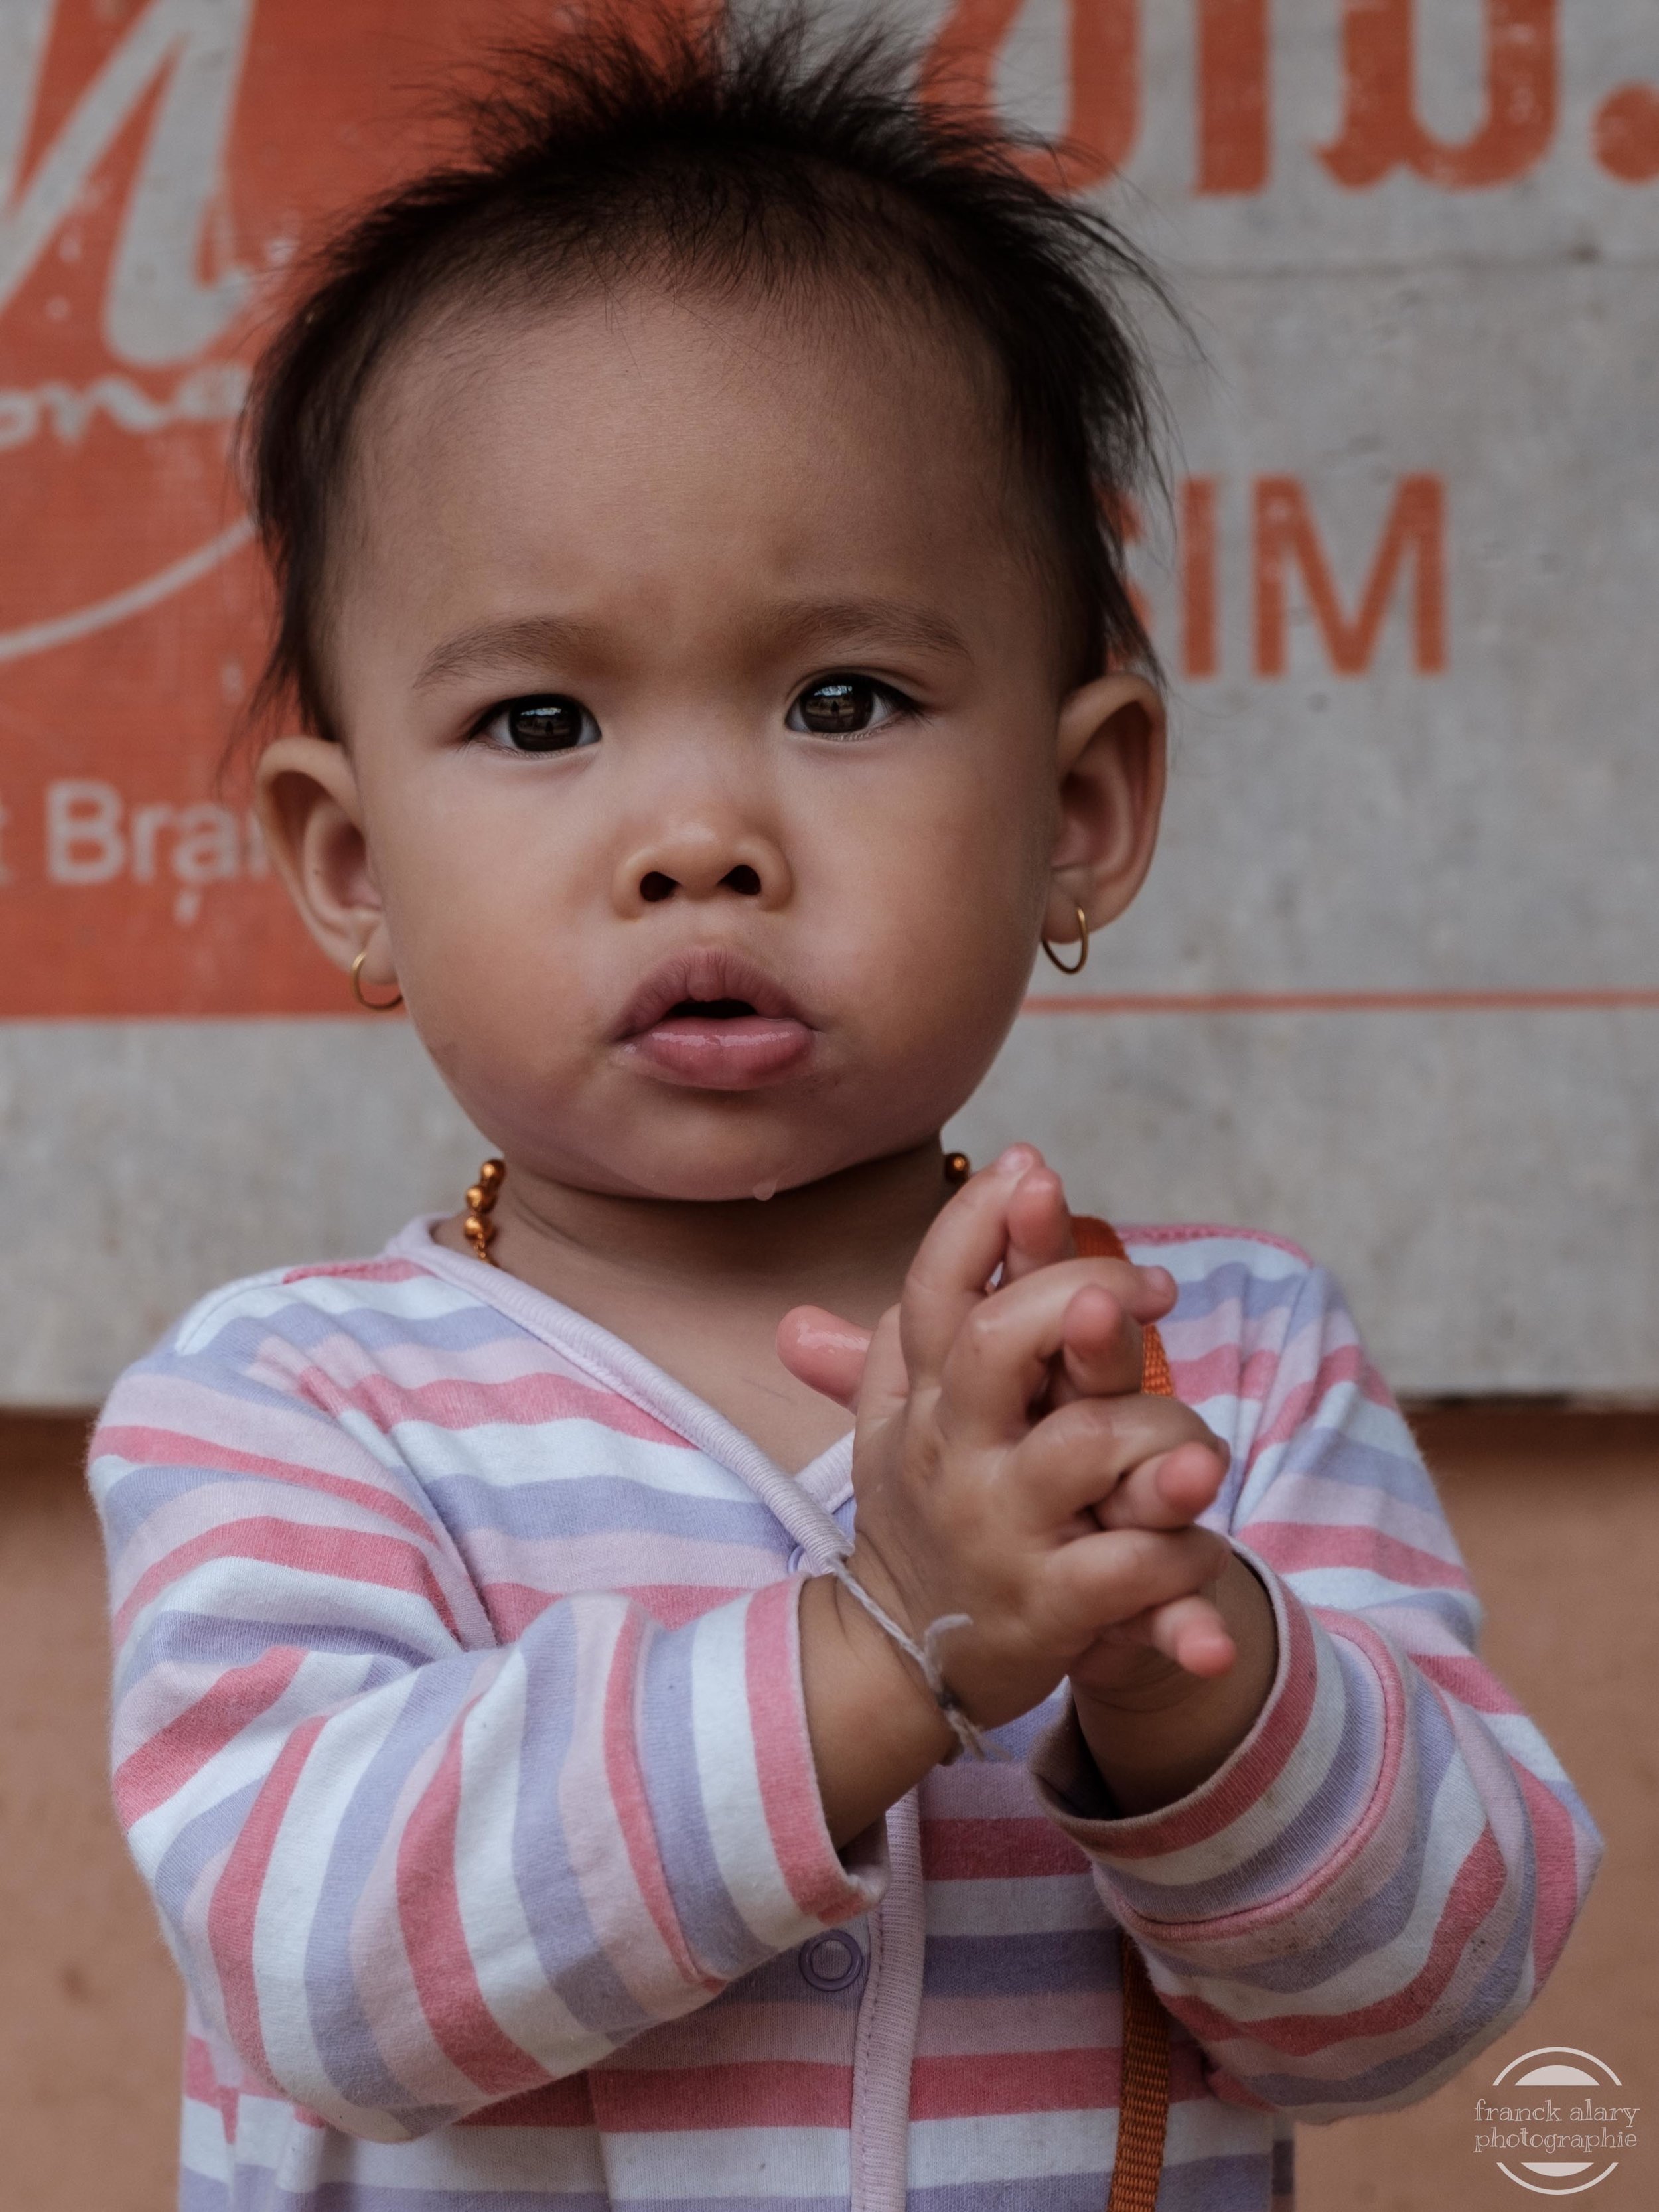   Sabaïdee !!&nbsp;   Le salut laotien consiste à saluer de la tête tout en joignant les mains comme pour prier. Il s'accompagne du mot "Sabaïdee" qui signifie "Bonjour" et "Bonsoir" en lao, la langue officielle du Laos. &nbsp;D'un point de vue lingu